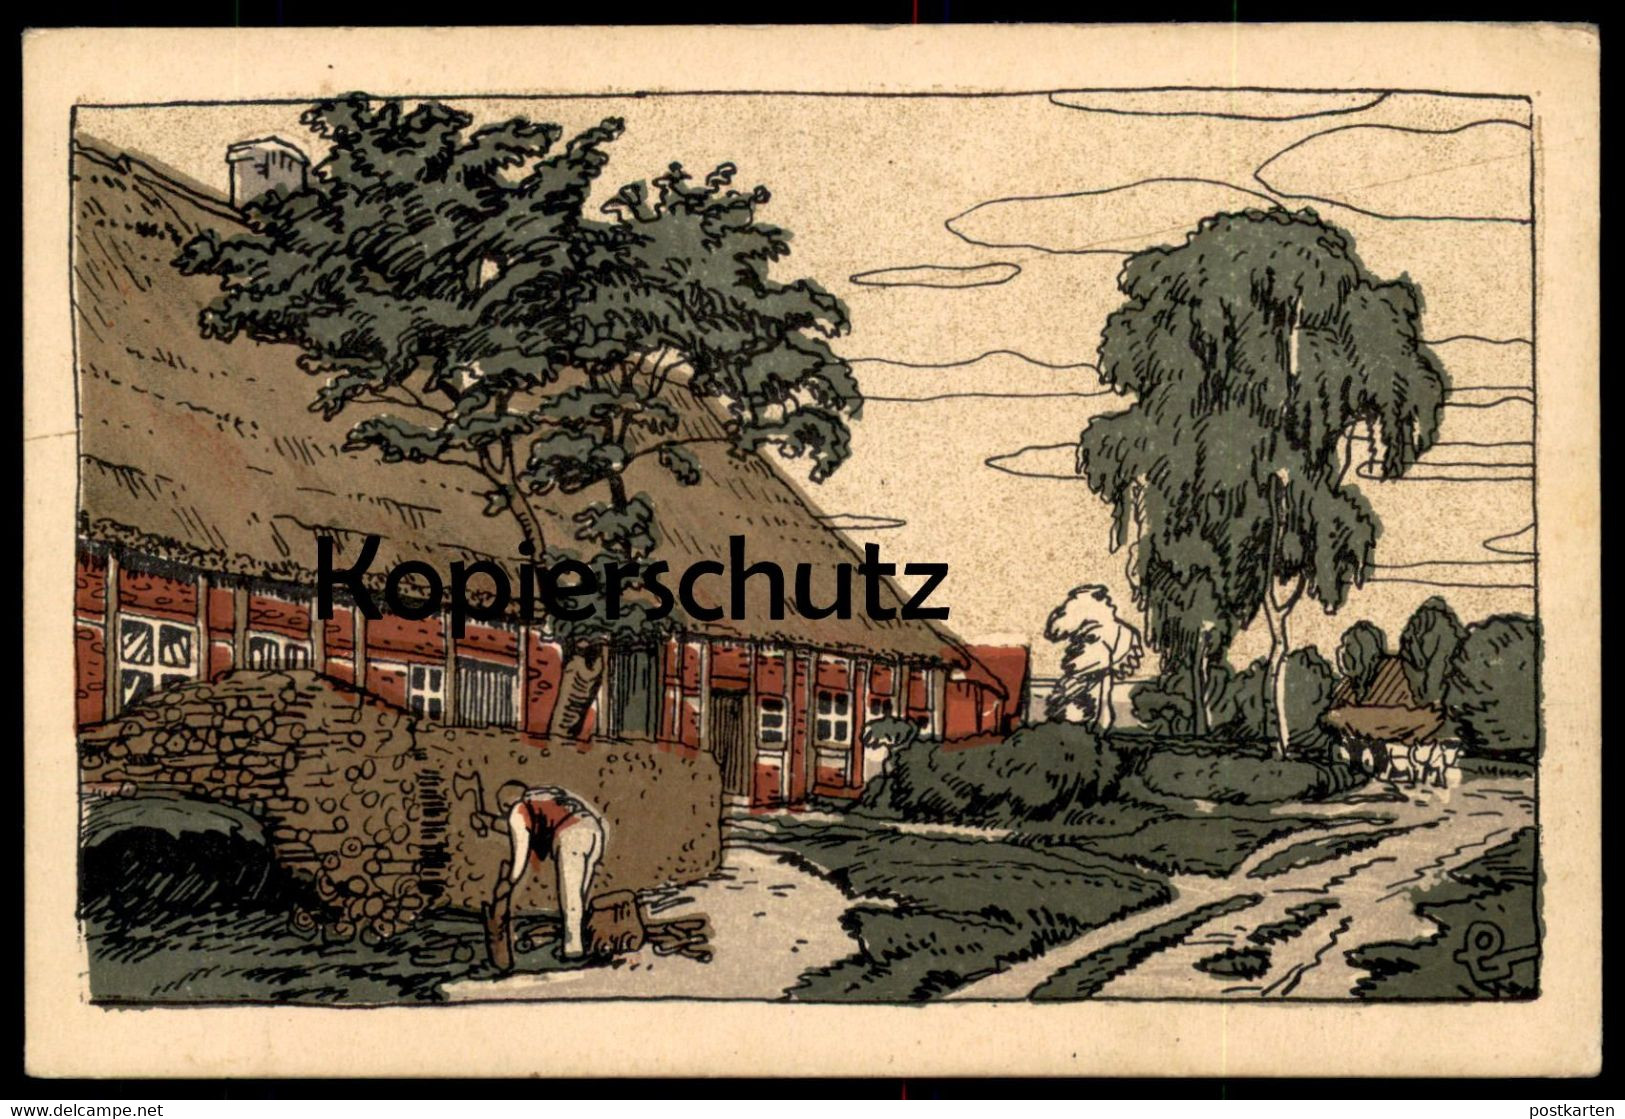 ALTE POSTKARTE KÜNSTLERSTEINZEICHNUNG STEINDRUCK LÜNEBURGER HEIDE Dorfkathe Steinzeichnung Ansichtskarte Cpa AK Postcard - Fallingbostel